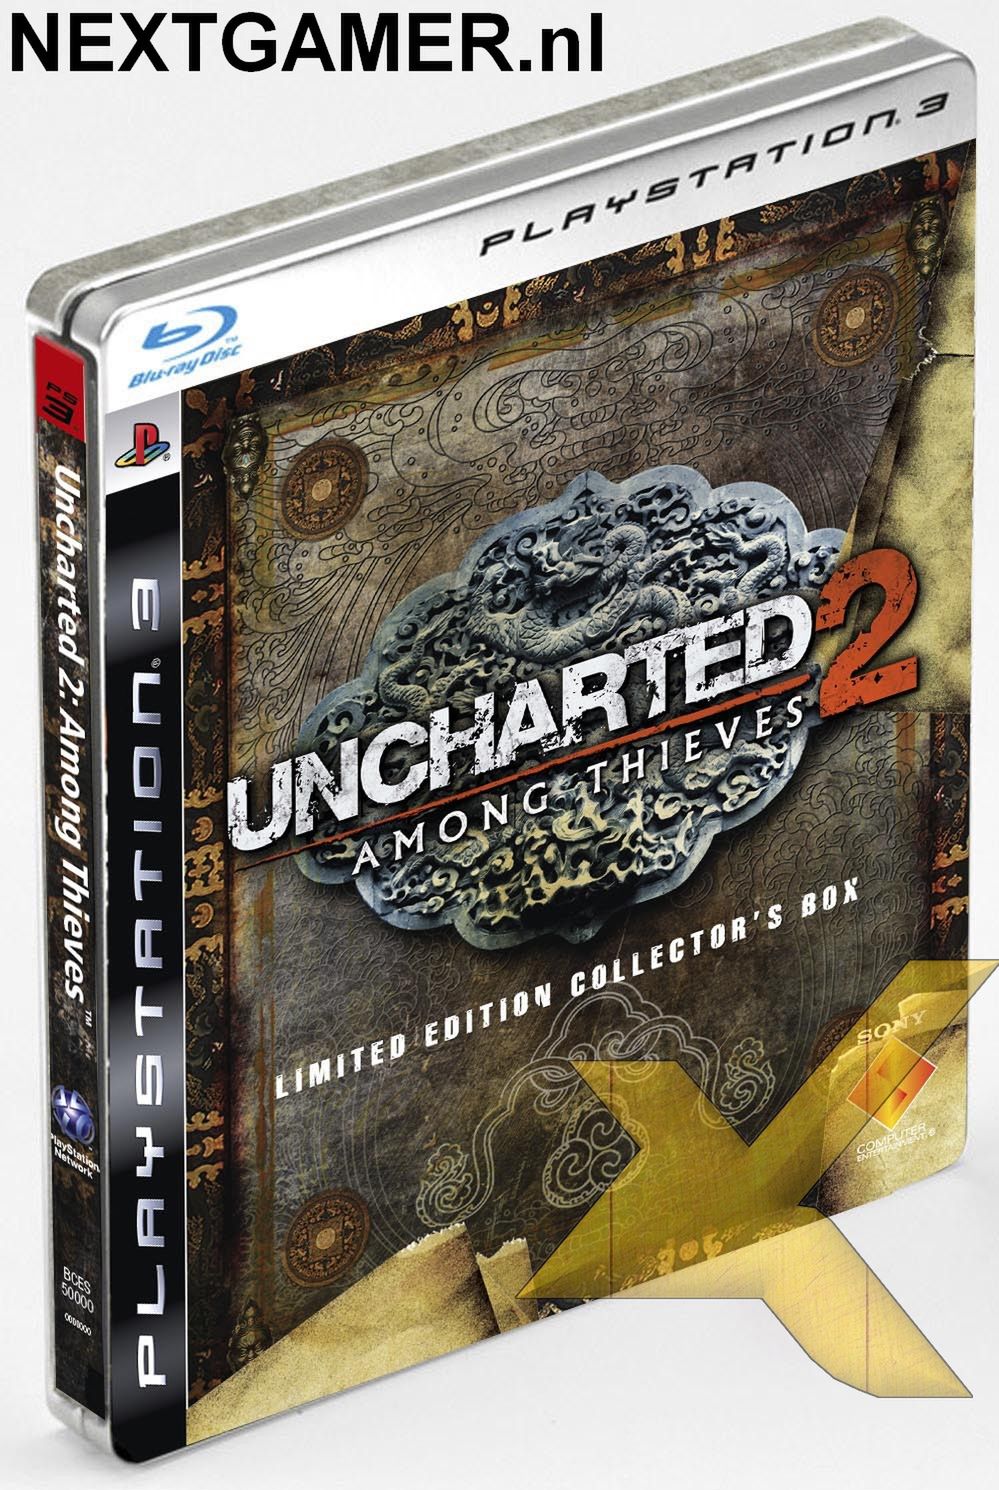 Będzie specjalna edycja Uncharted 2